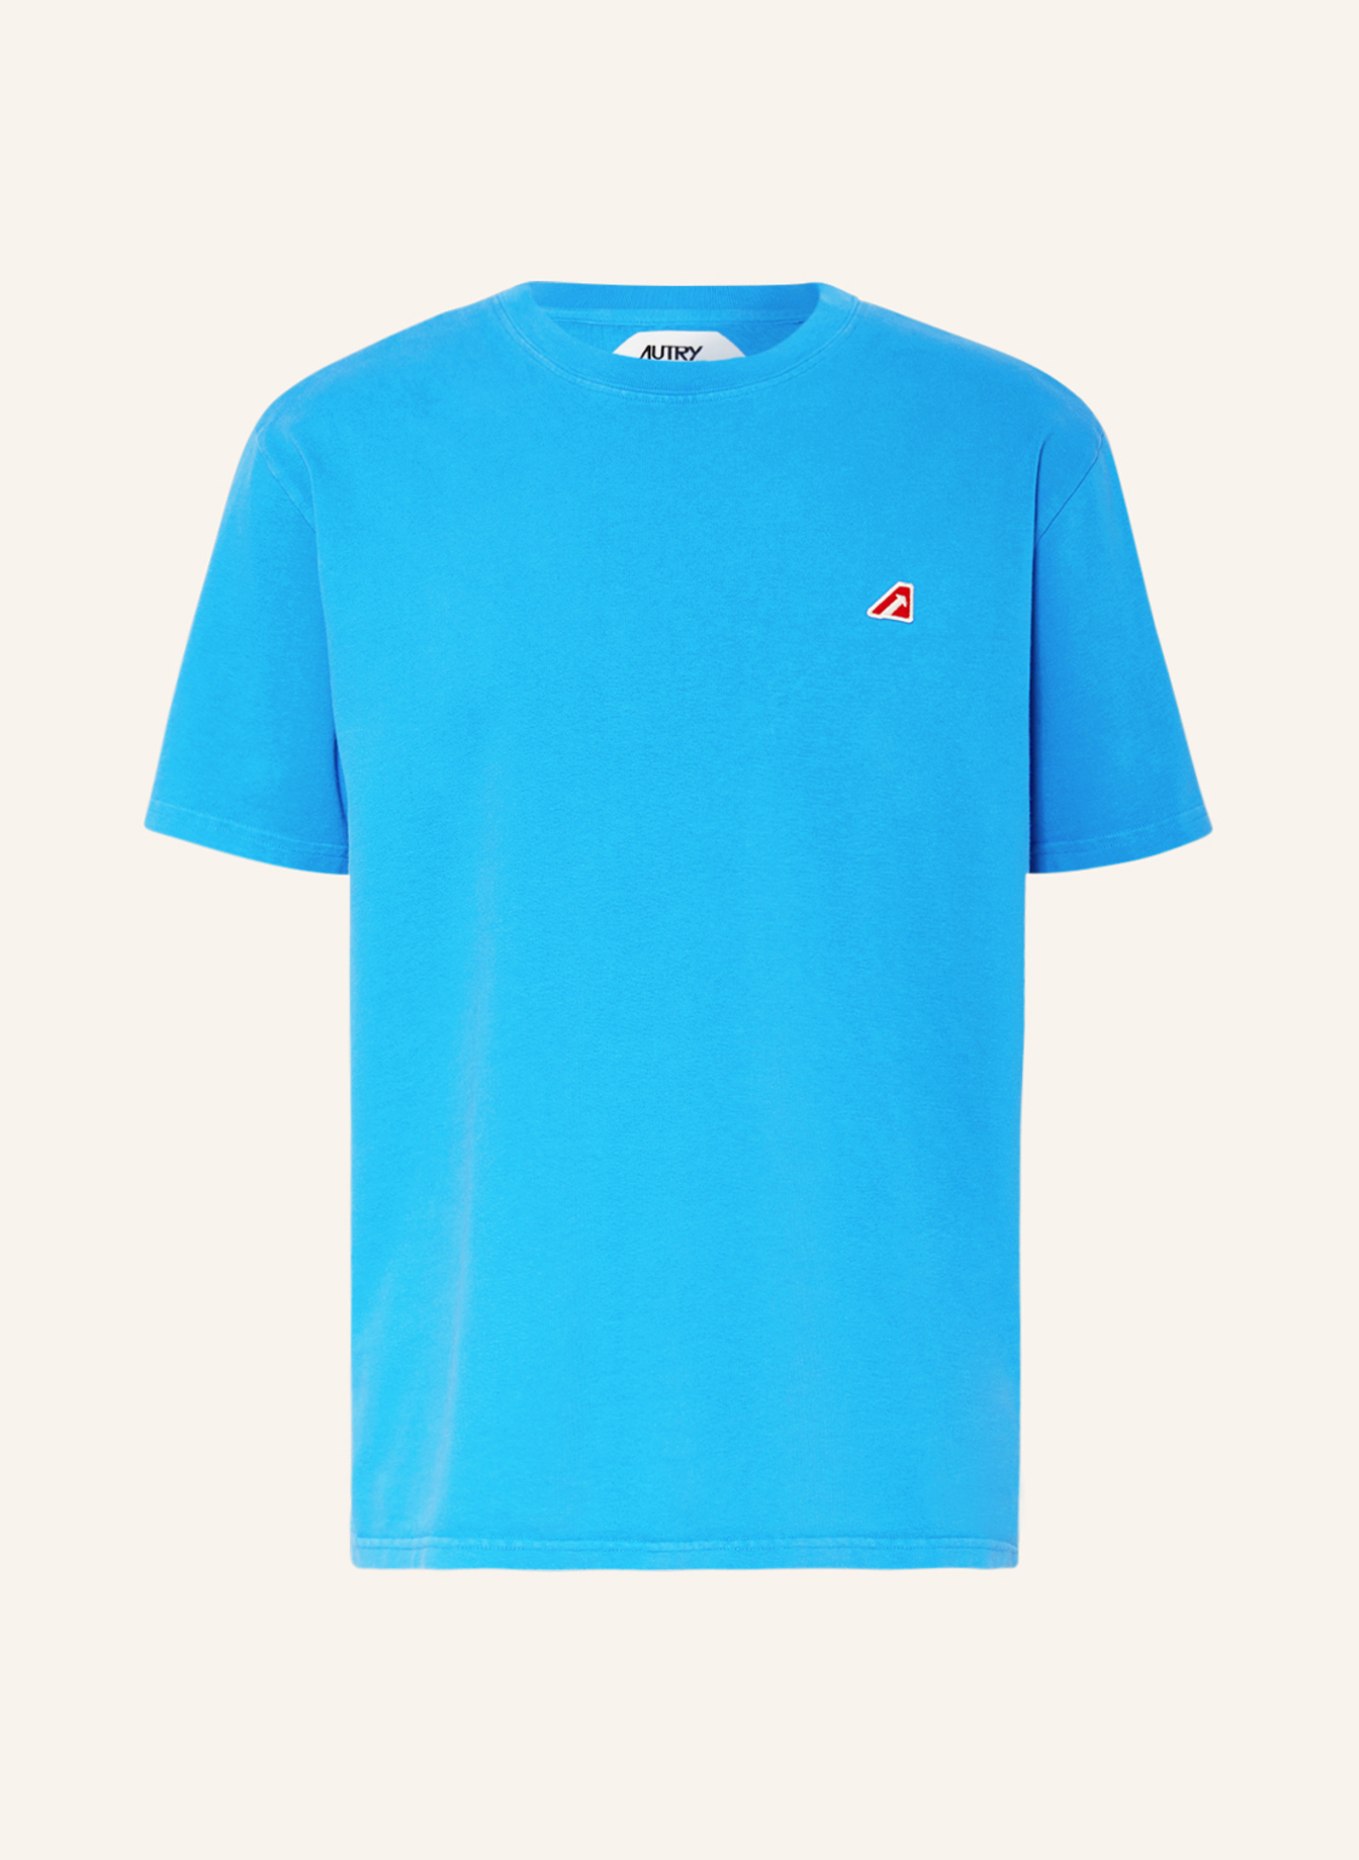 AUTRY T-shirt EASE, Color: BLUE (Image 1)